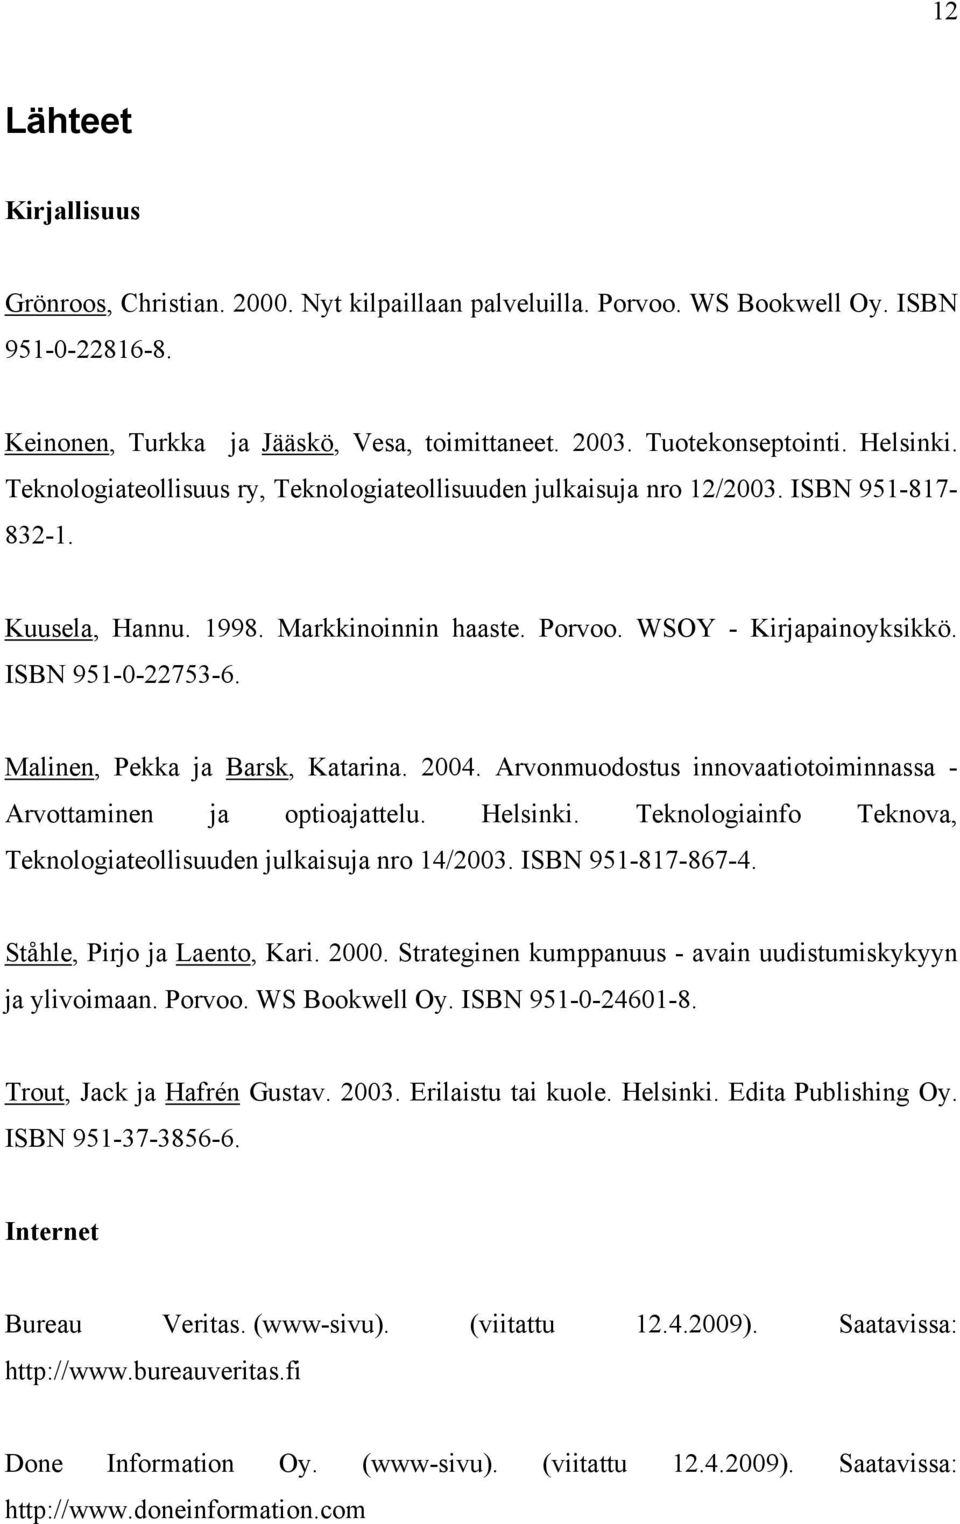 Malinen, Pekka ja Barsk, Katarina. 2004. Arvonmuodostus innovaatiotoiminnassa - Arvottaminen ja optioajattelu. Helsinki. Teknologiainfo Teknova, Teknologiateollisuuden julkaisuja nro 14/2003.